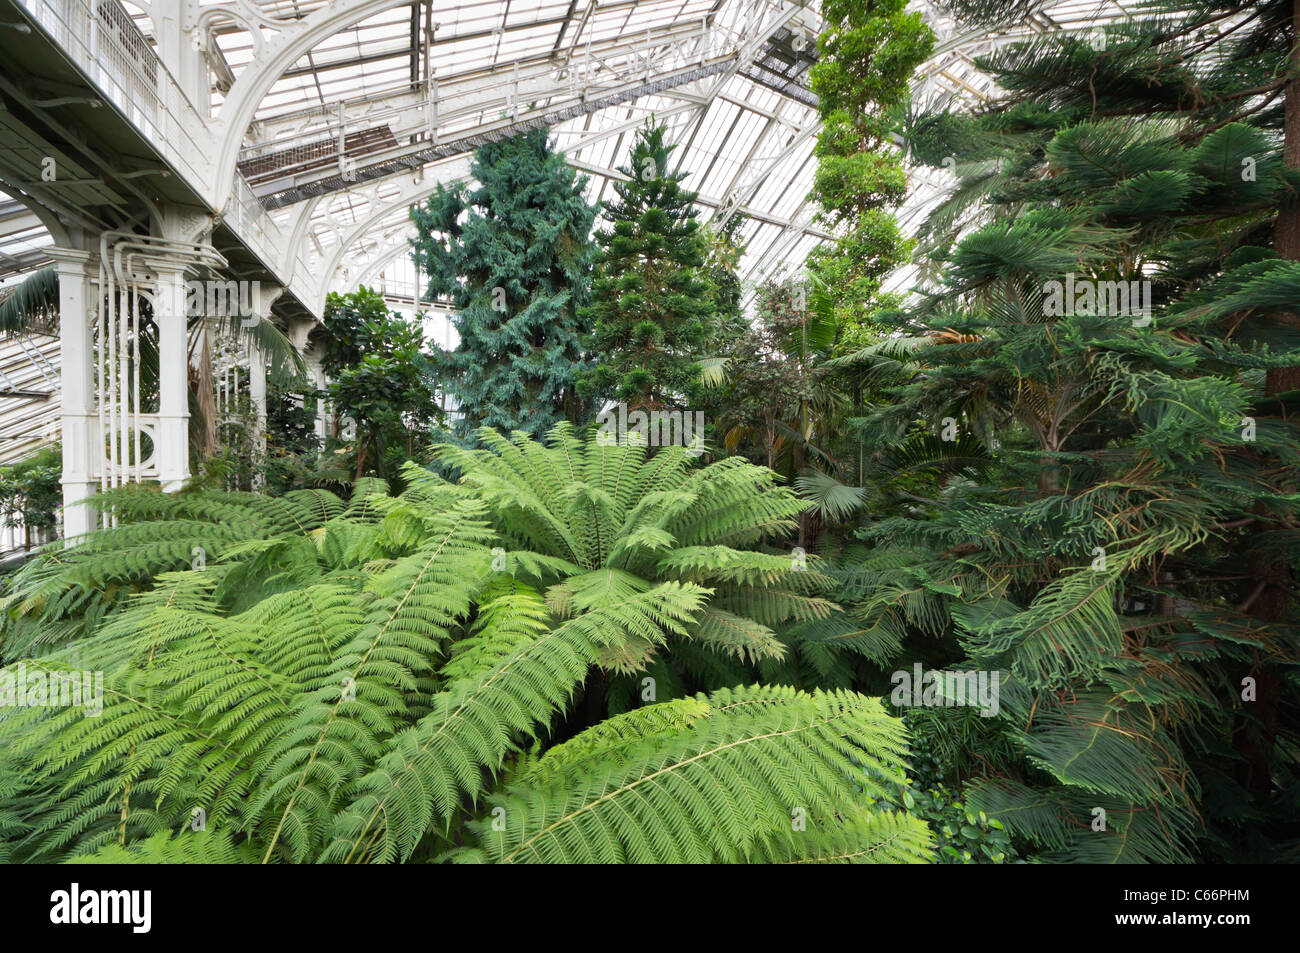 Londres, Kew Gardens, Royal Horticultural Society - la maison tempérée, la plus grande structure en verre et fer victorien en Europe Banque D'Images